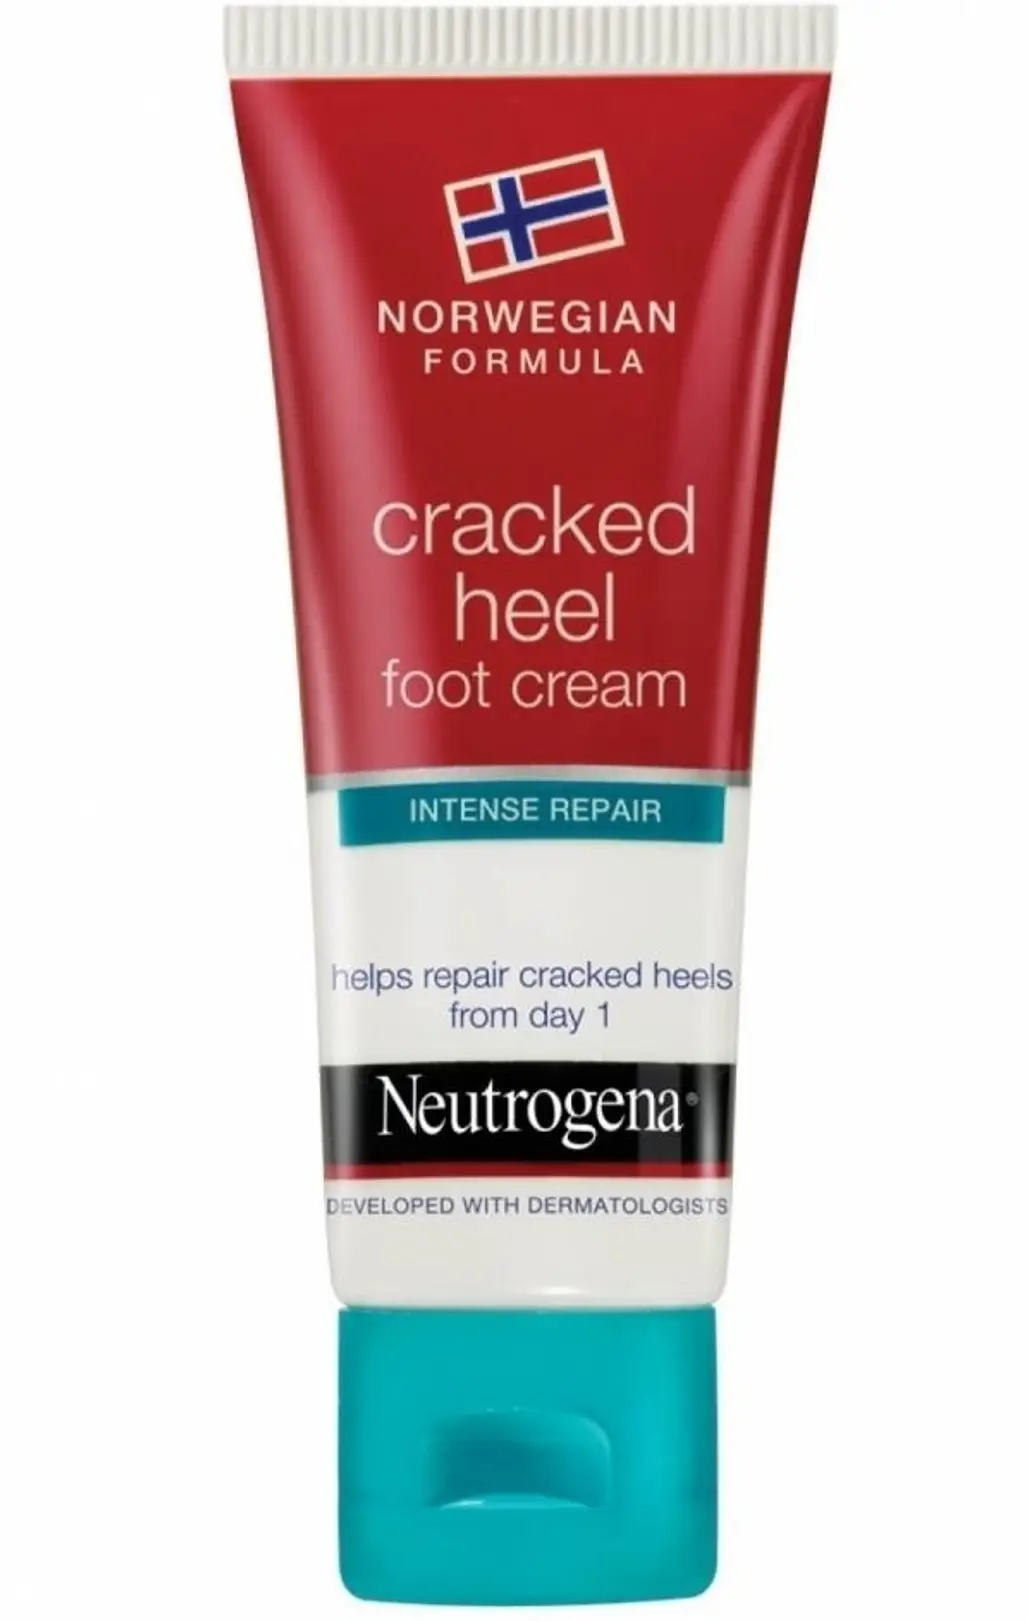 Neutrogena Cracked Heel Foot Cream